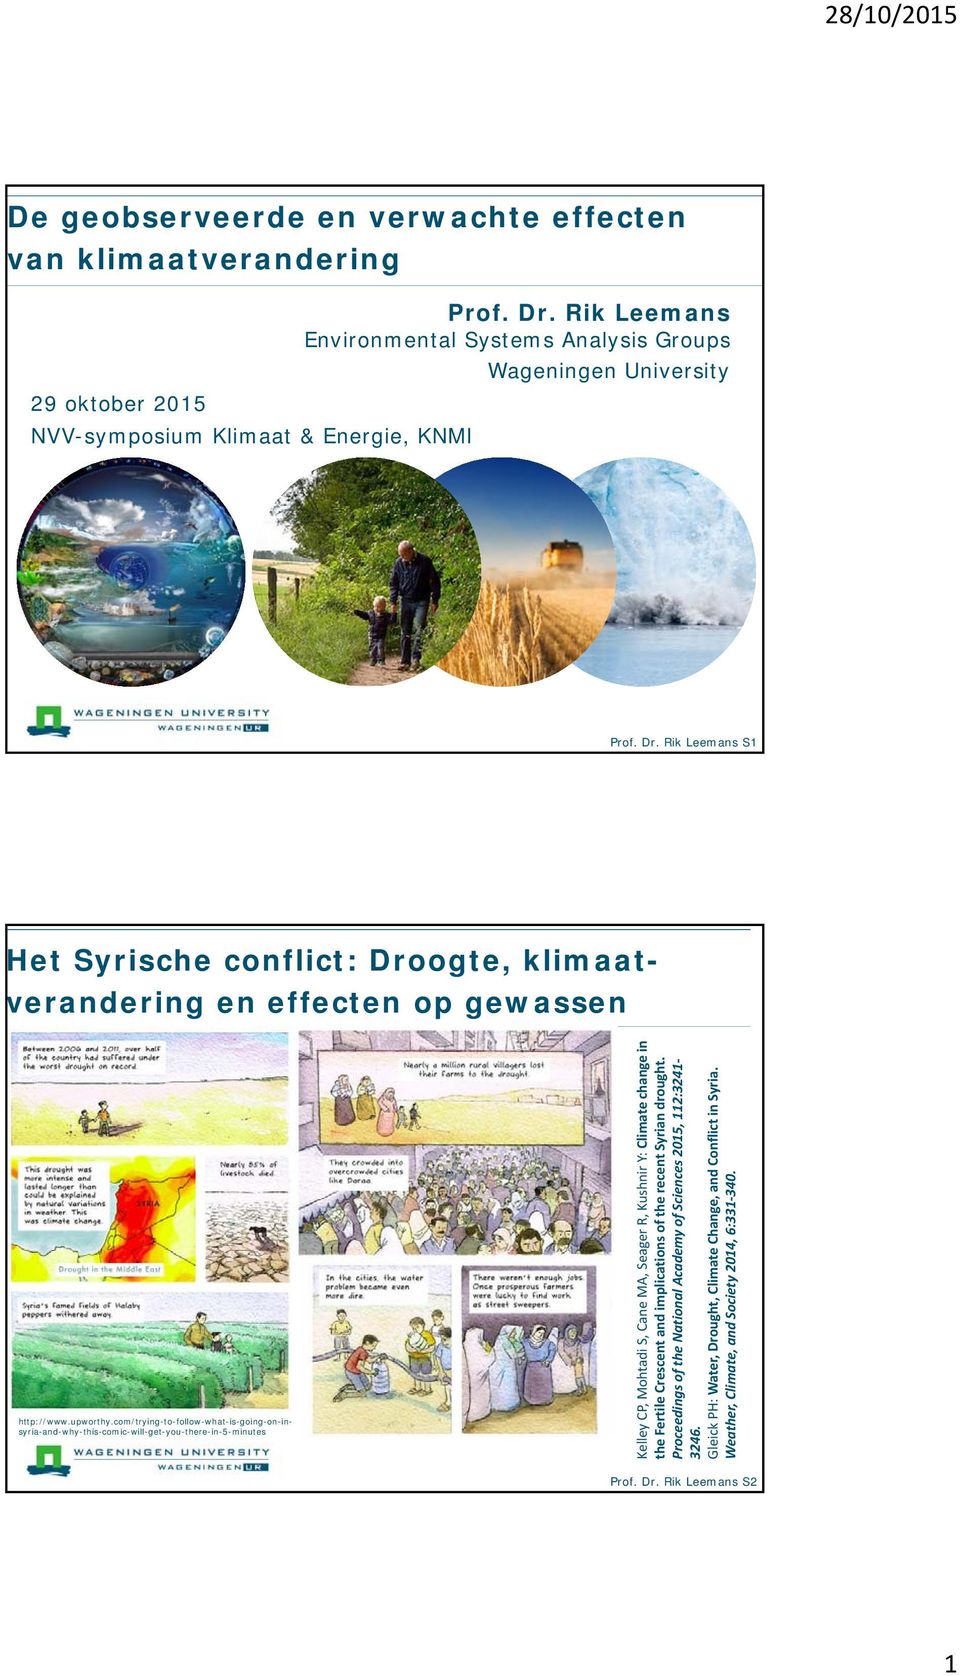 Rik Leemans S1 Het Syrische conflict: Droogte, klimaatverandering en effecten op gewassen http://www.upworthy.